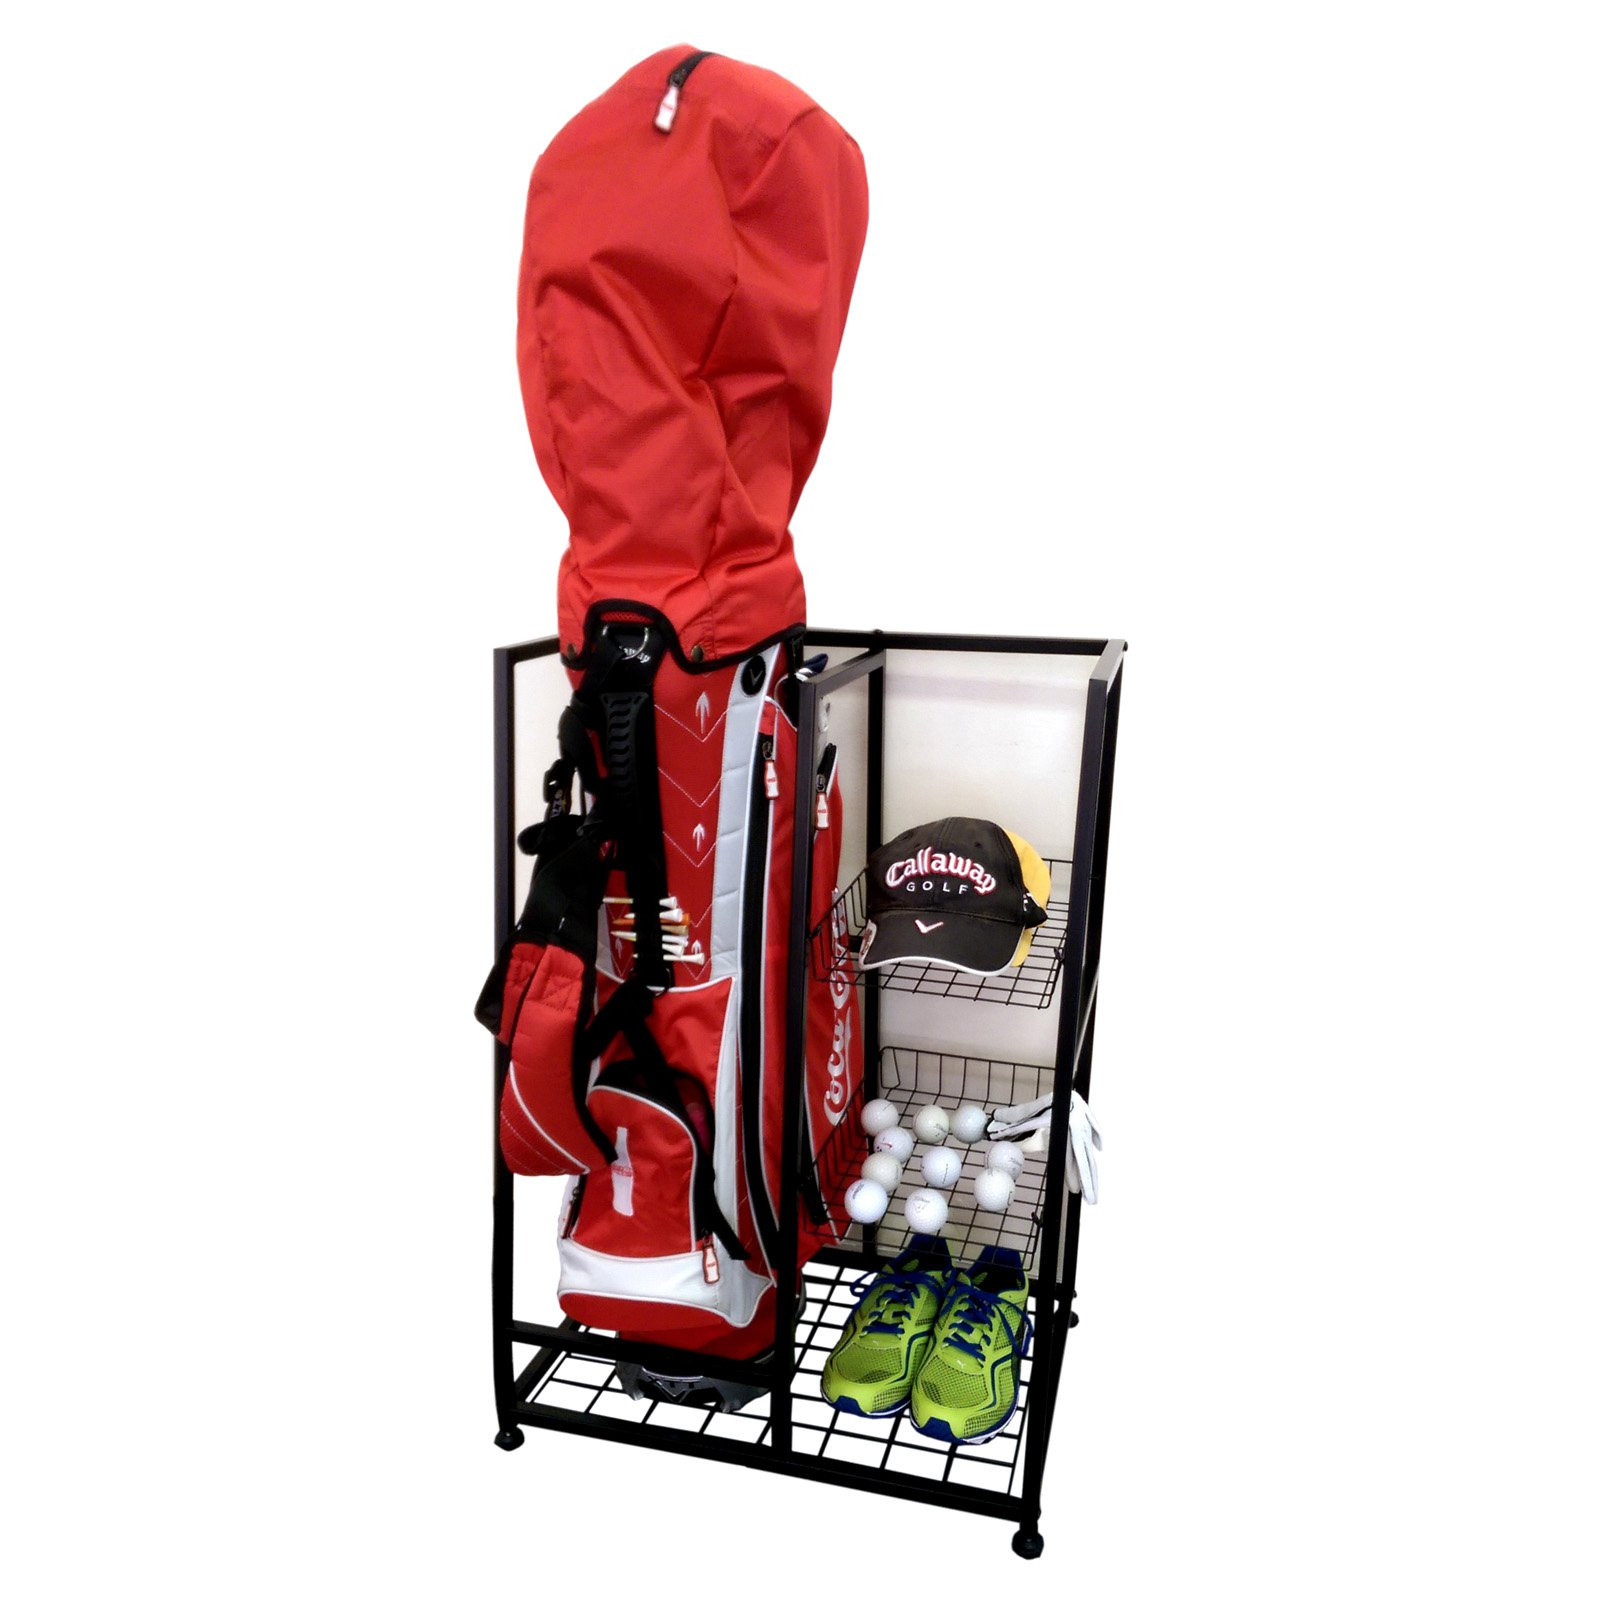 Golf Organizer For Garage
 Single Golf Bag Organizer Garage Accessories Equipment